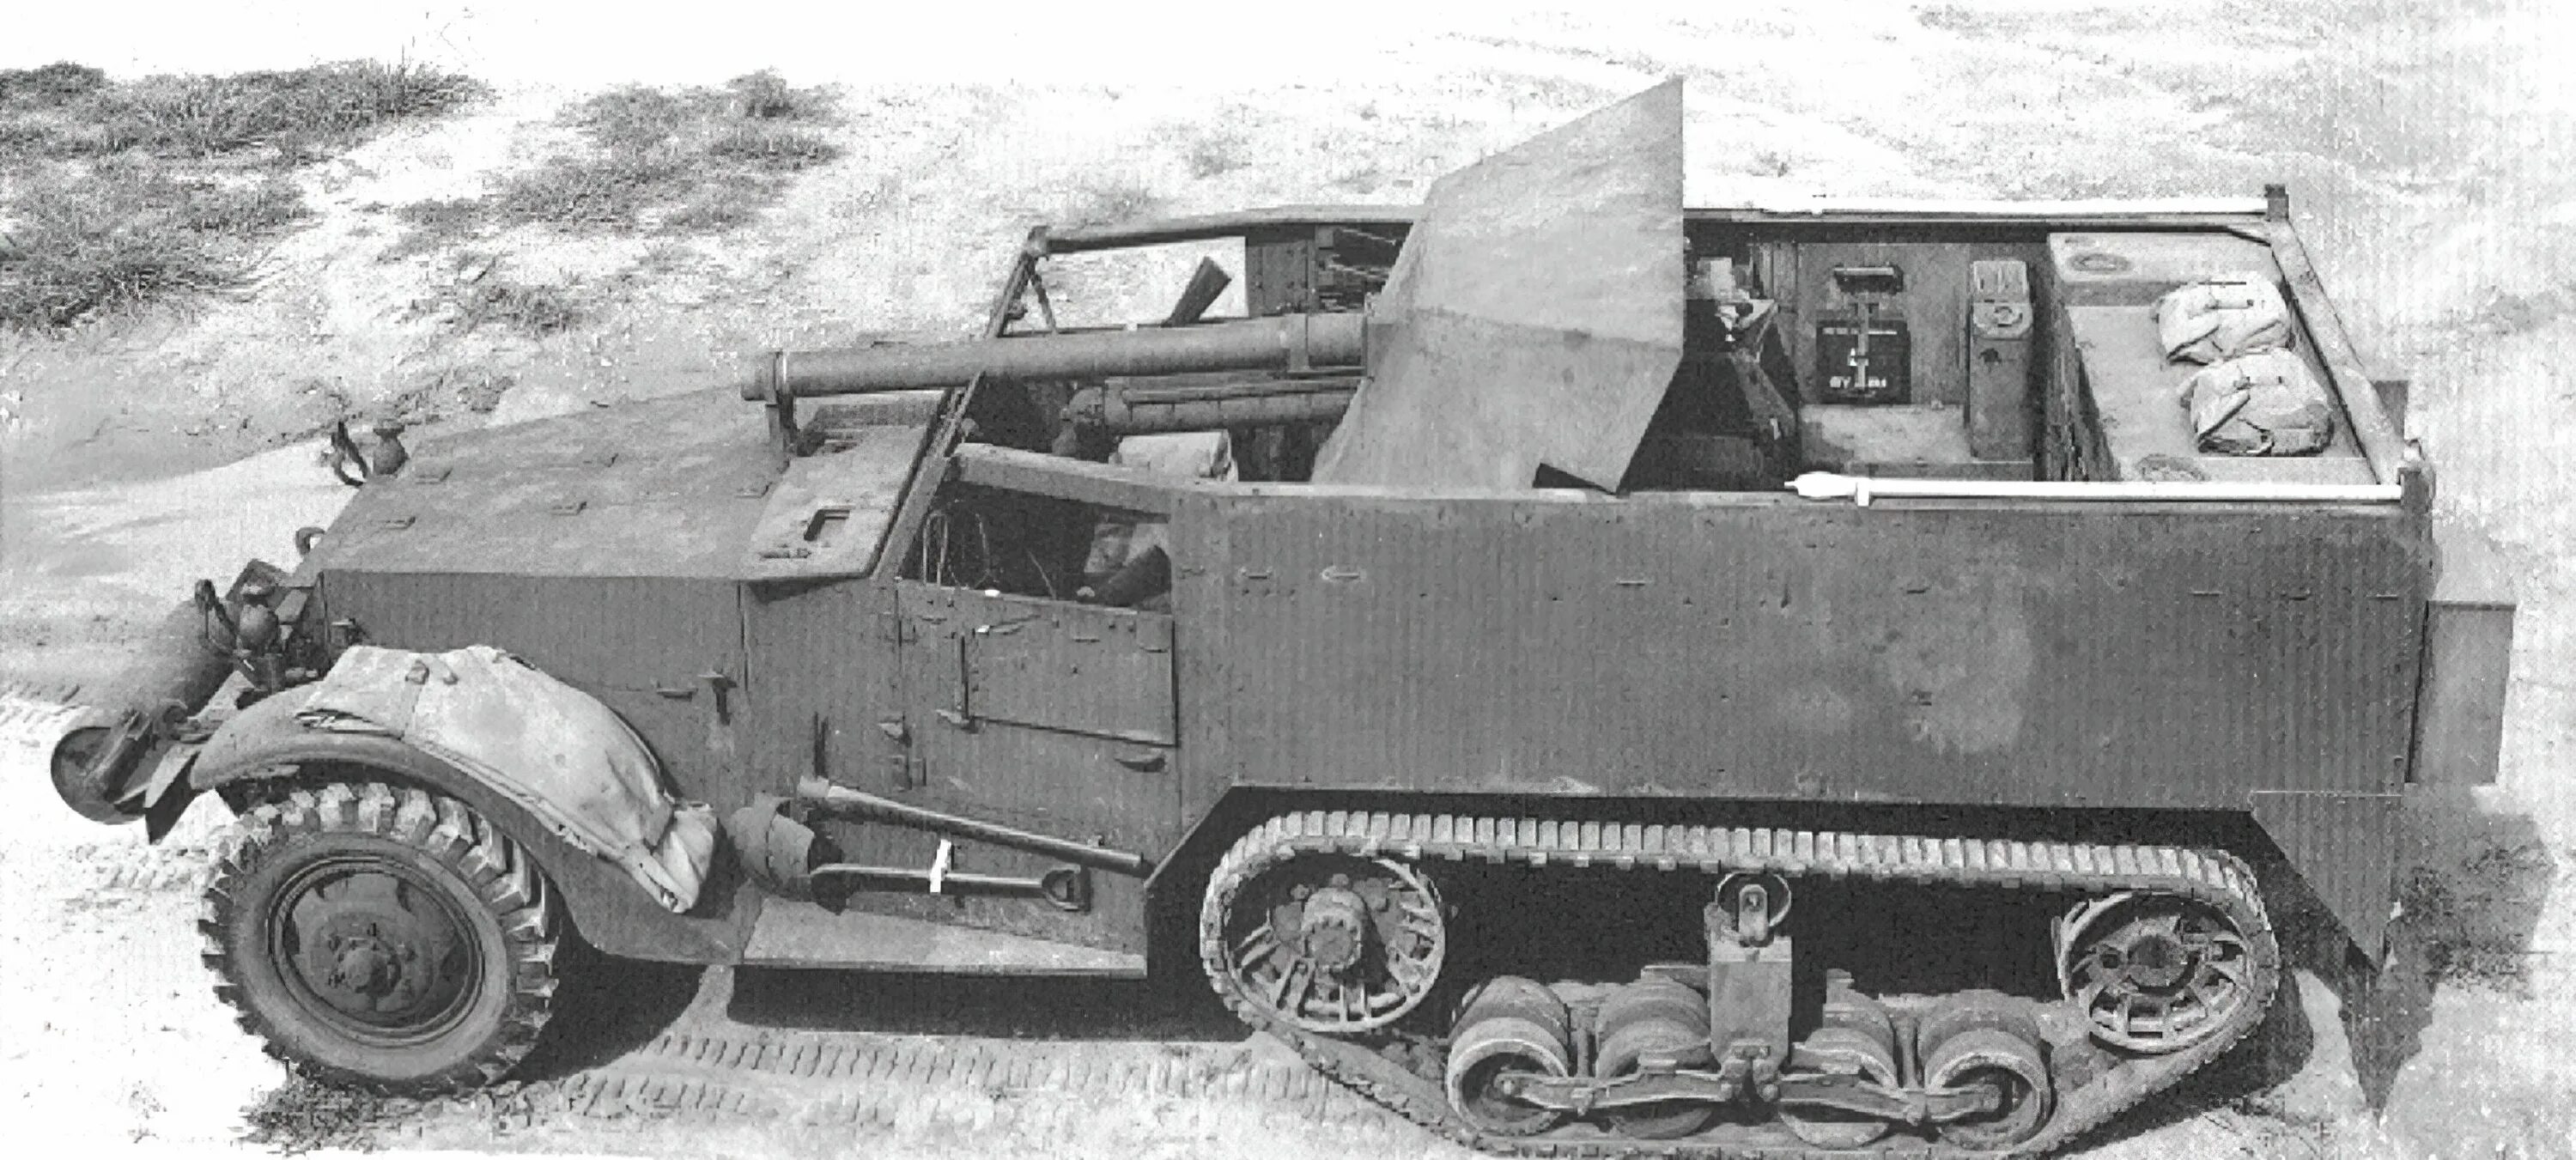 Т48 57 mm Gun Motor Carriage. SD KFZ 1941 С пушкой. САУ Су-57 т48. БТР м3 полугусеничный РККА.